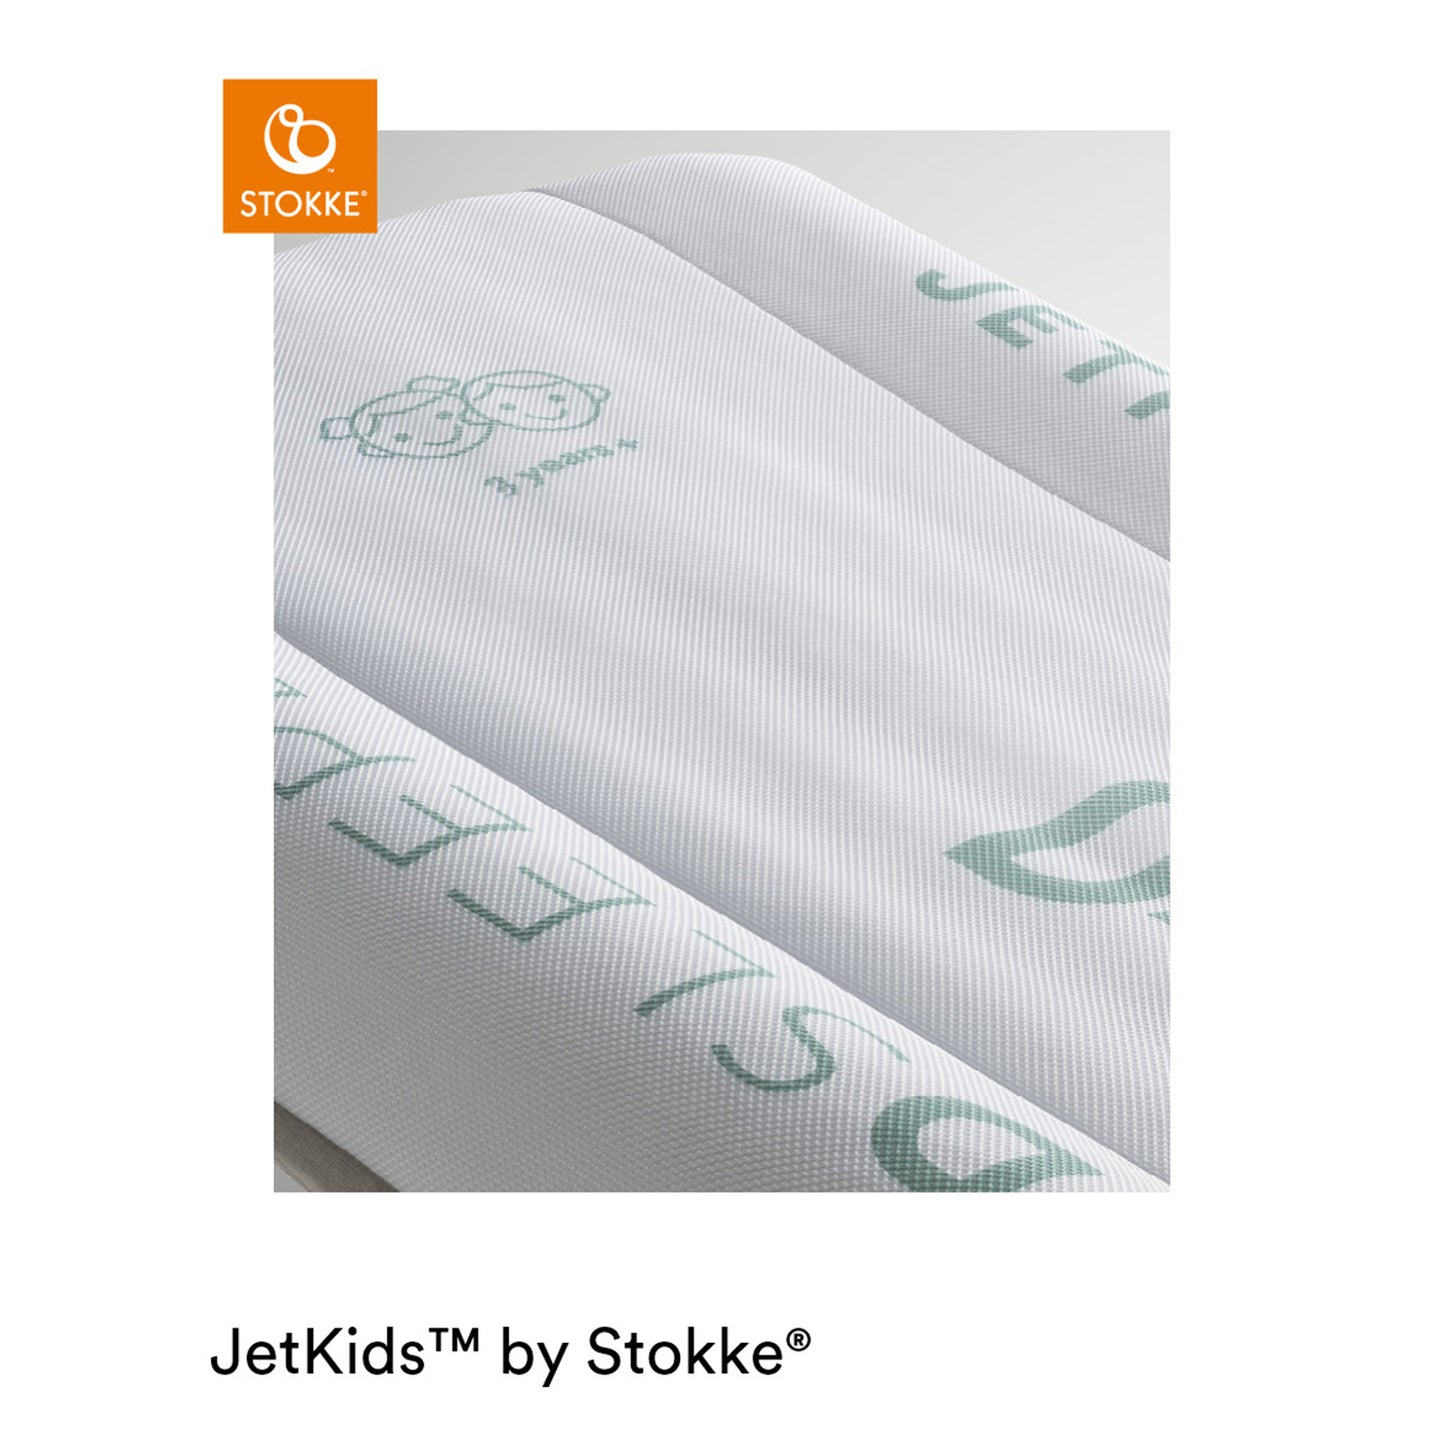 STOKKE® - Letto gonfiabile per bambini CloudSleeper™ JETKIDS™